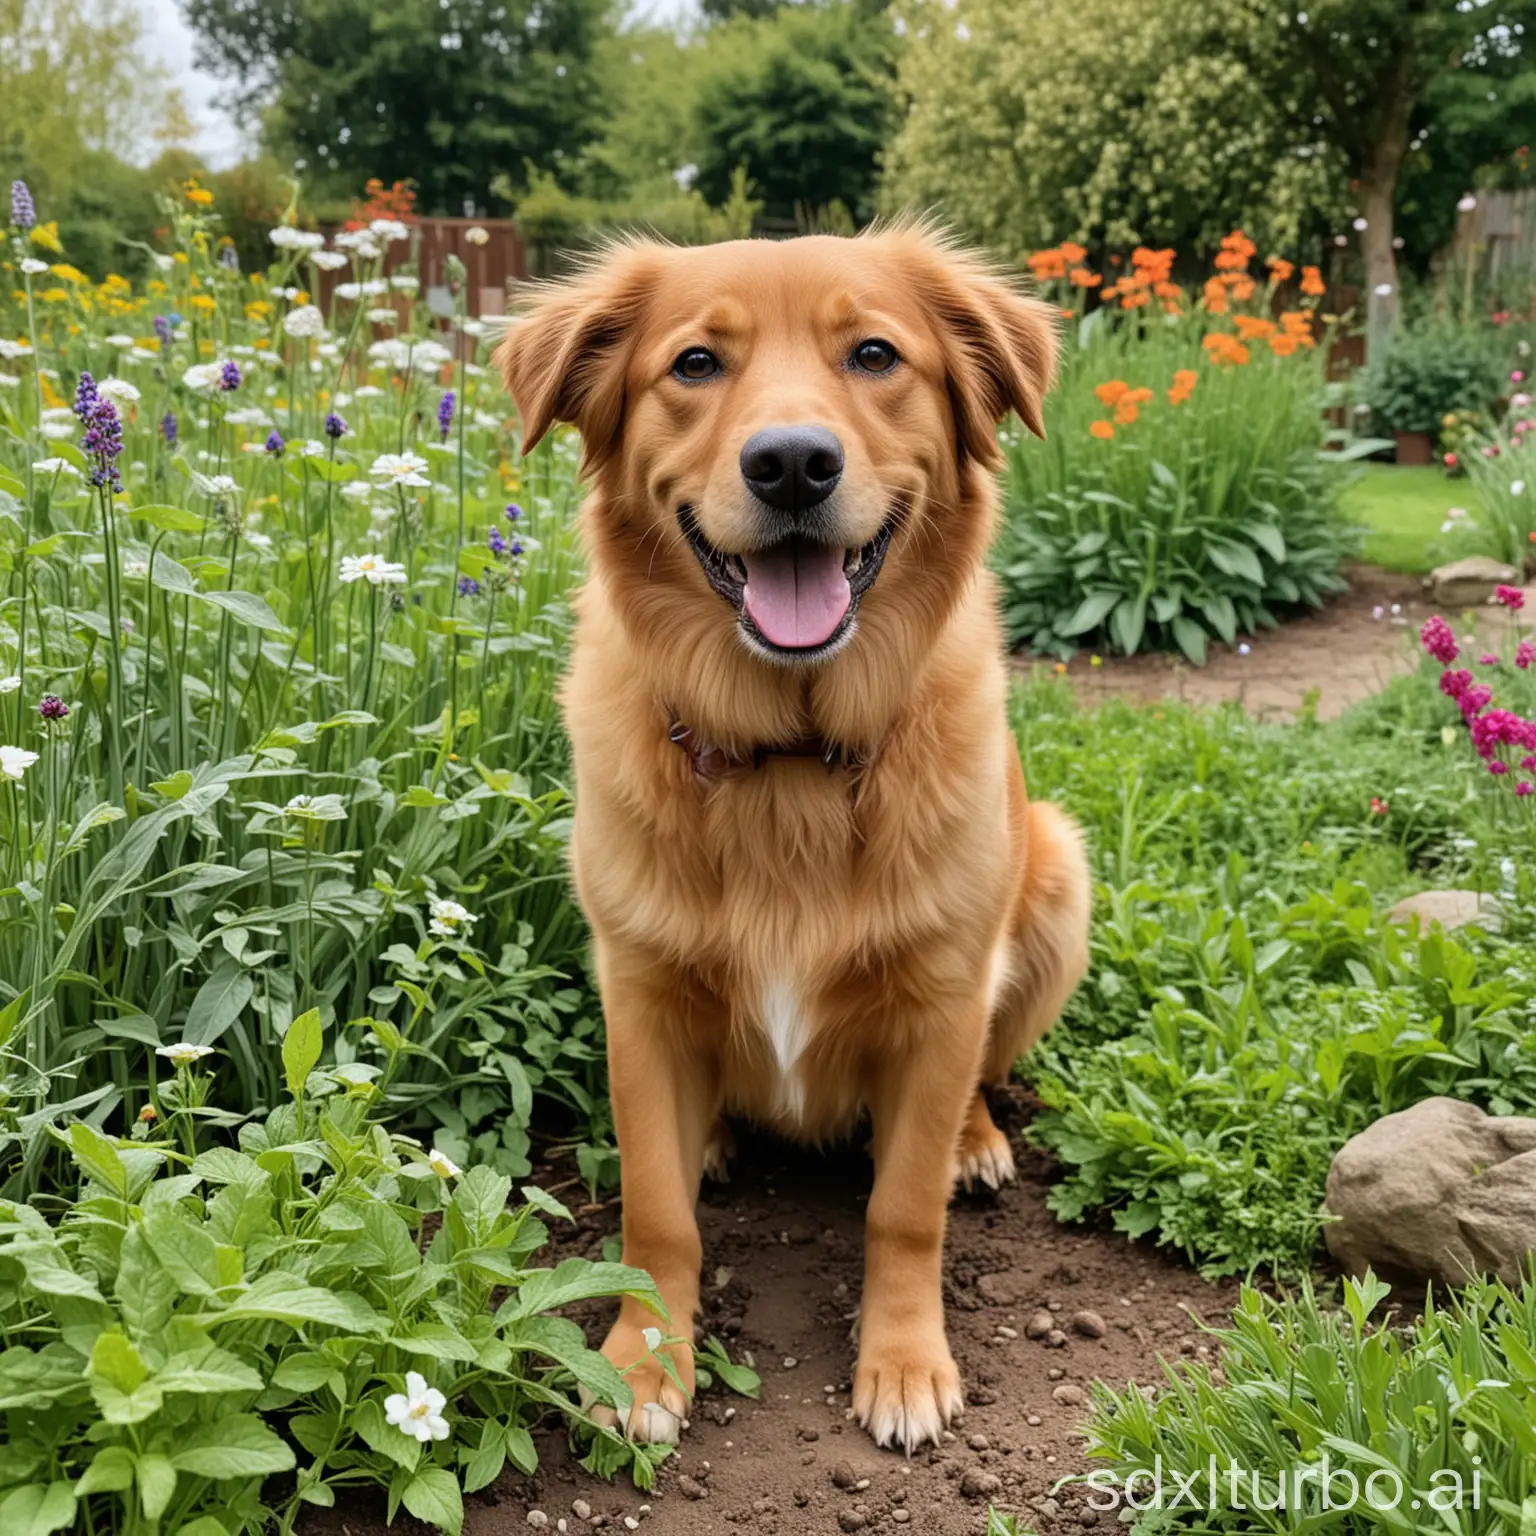 Joyful-Dog-Enjoying-Playtime-in-Vibrant-Garden-Setting